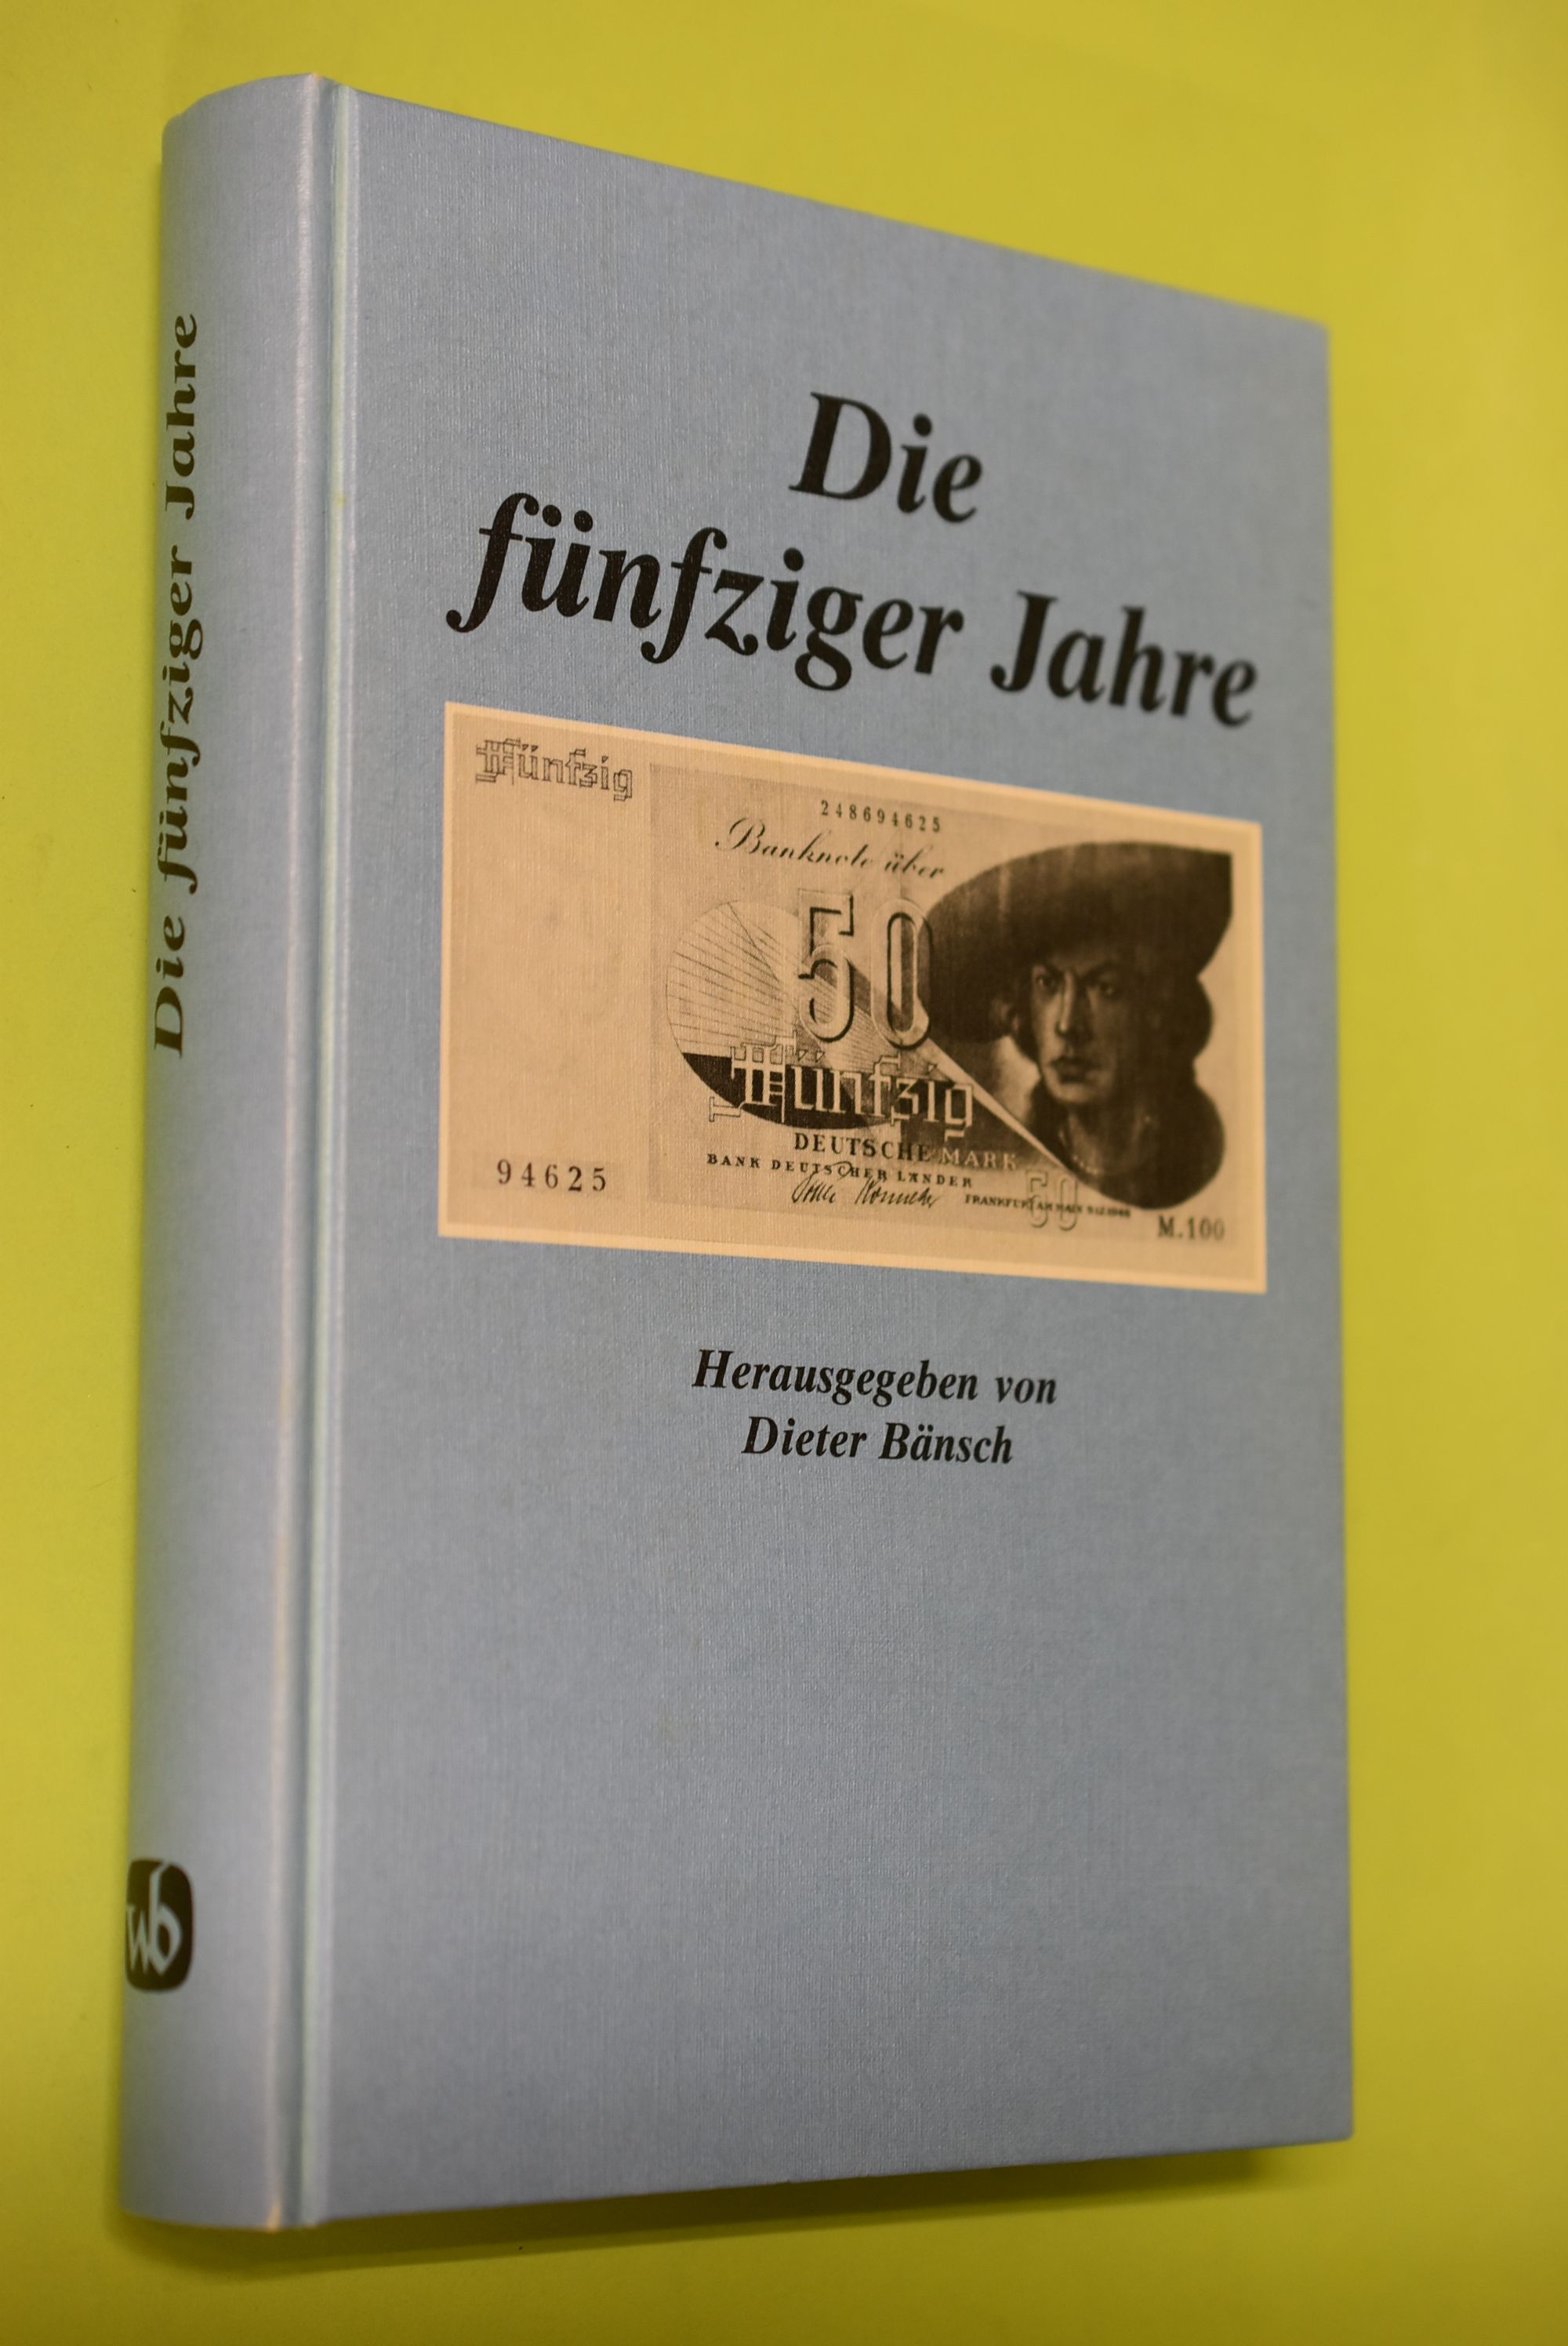 Die fünfziger Jahre : Beitr. zu Politik u. Kultur. hrsg. von Dieter Bänsch - Bänsch, Dieter (Herausgeber)